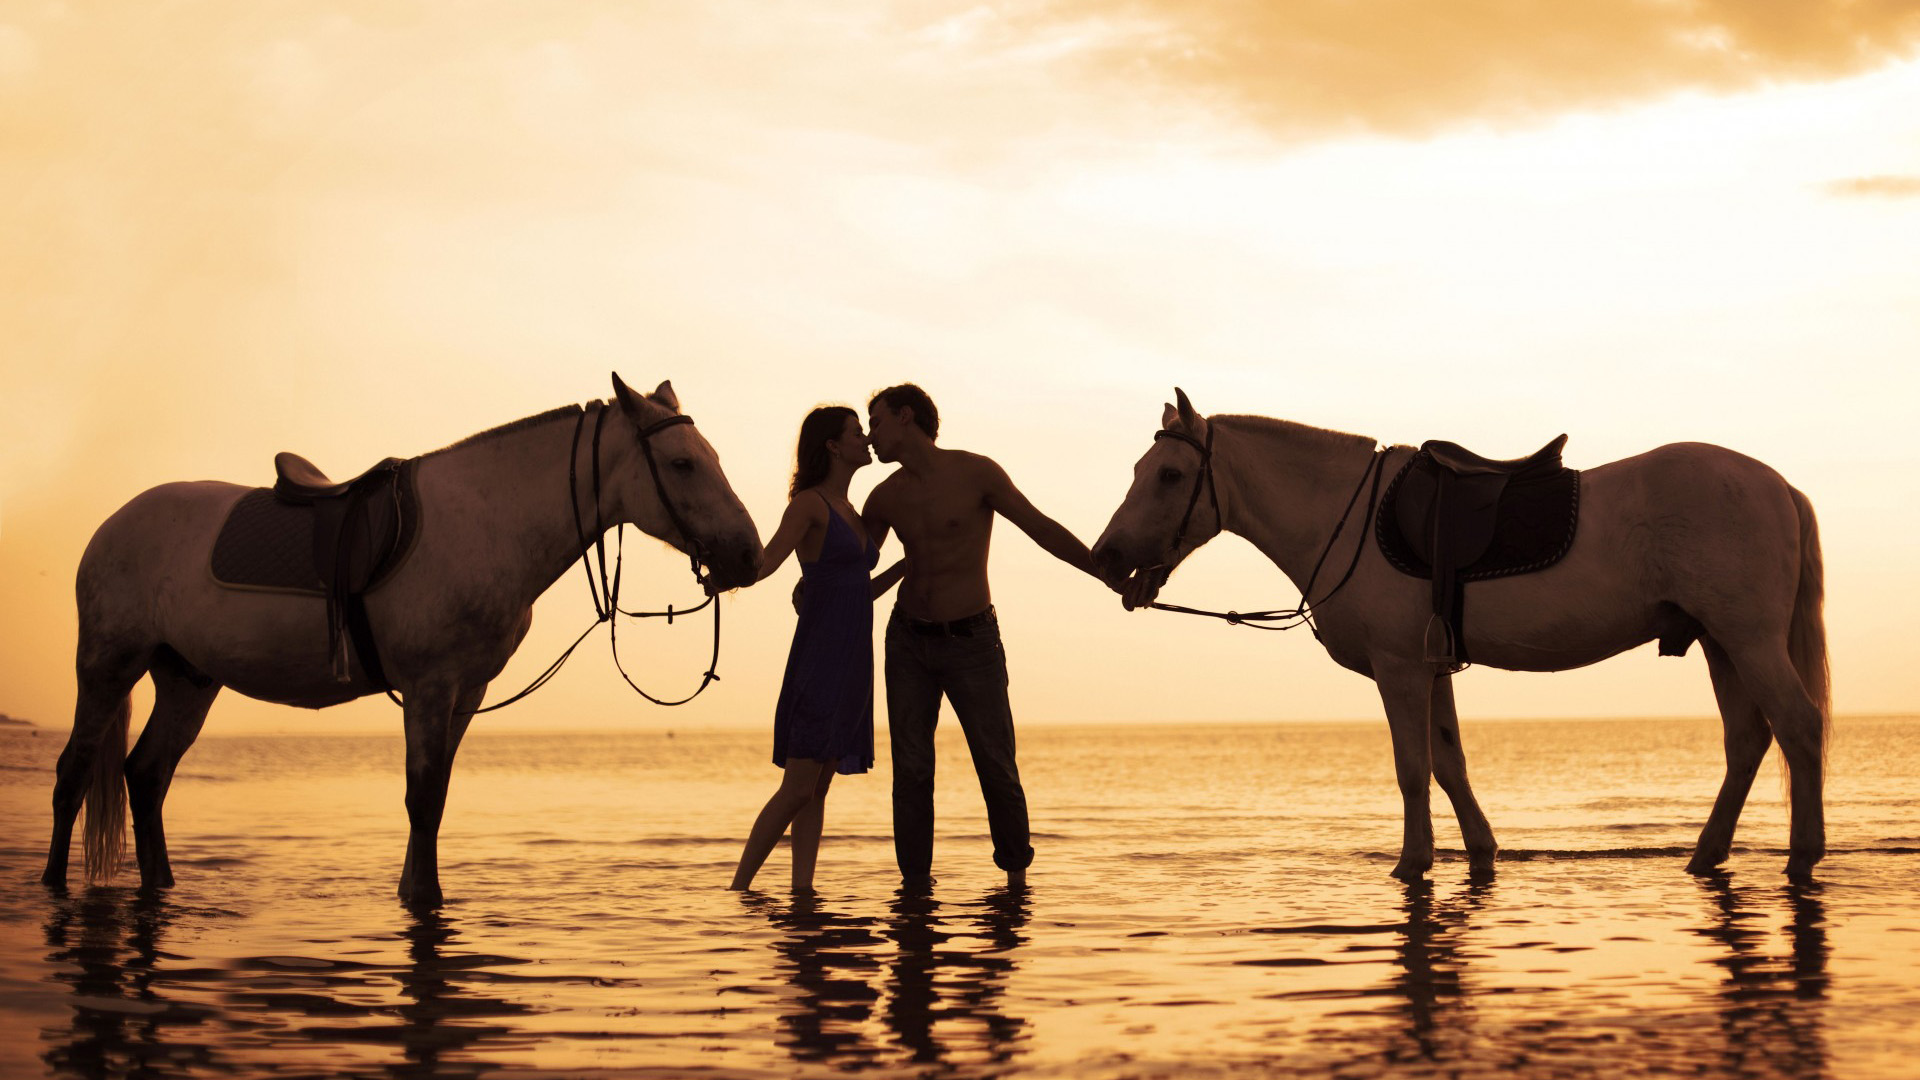 浪漫,爱情,海边,恋人,接吻,马,意境壁纸